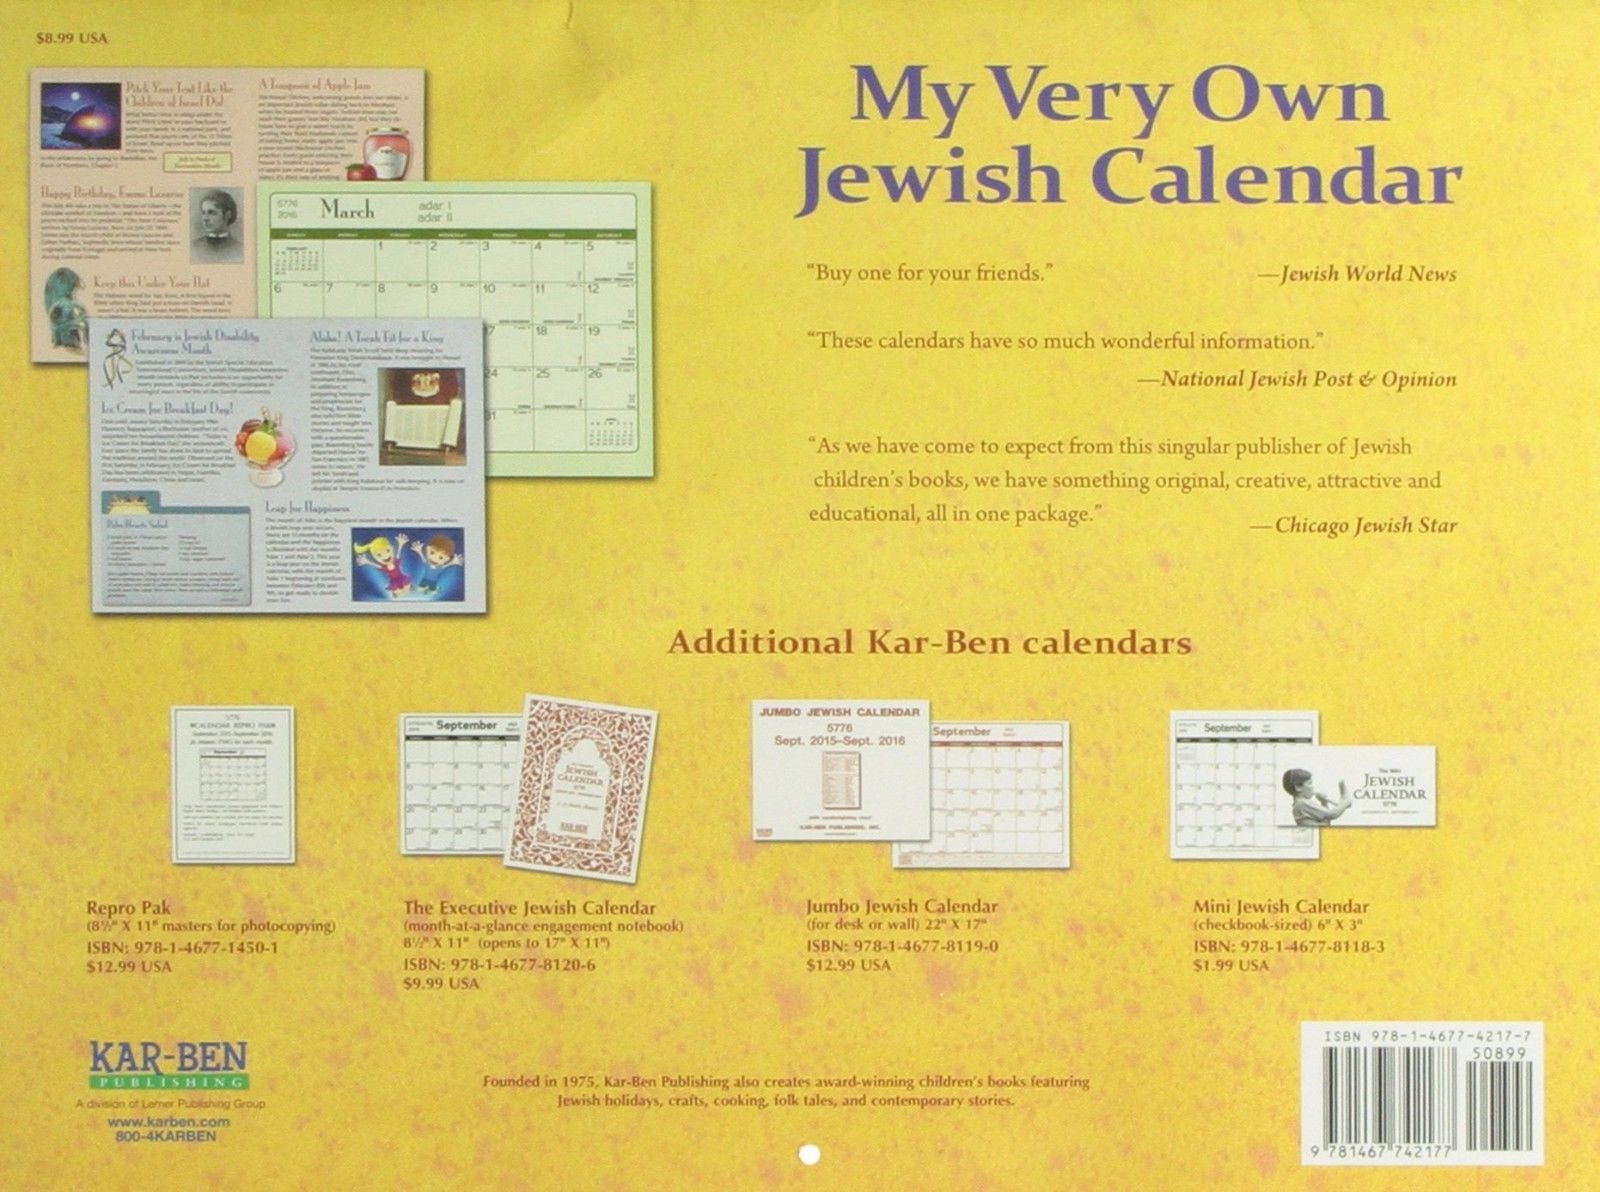 El Calendario de Arte Judío por Mickie 2016 a partir de septiembre 2015 hasta diciembre 2016